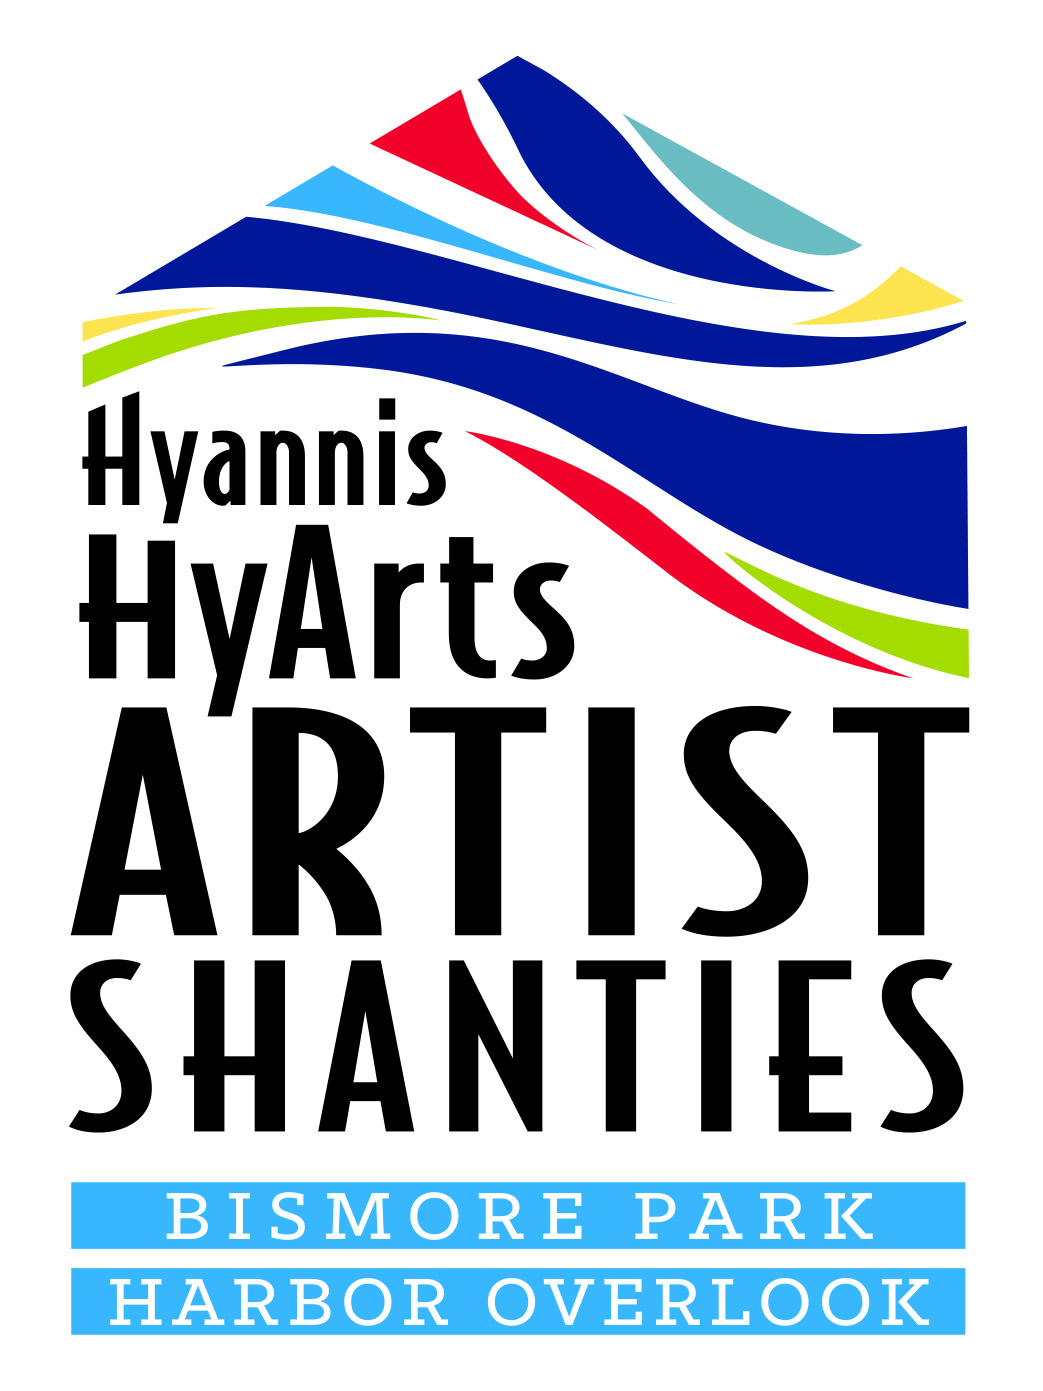 Hyannis HyArts Artist Shanties